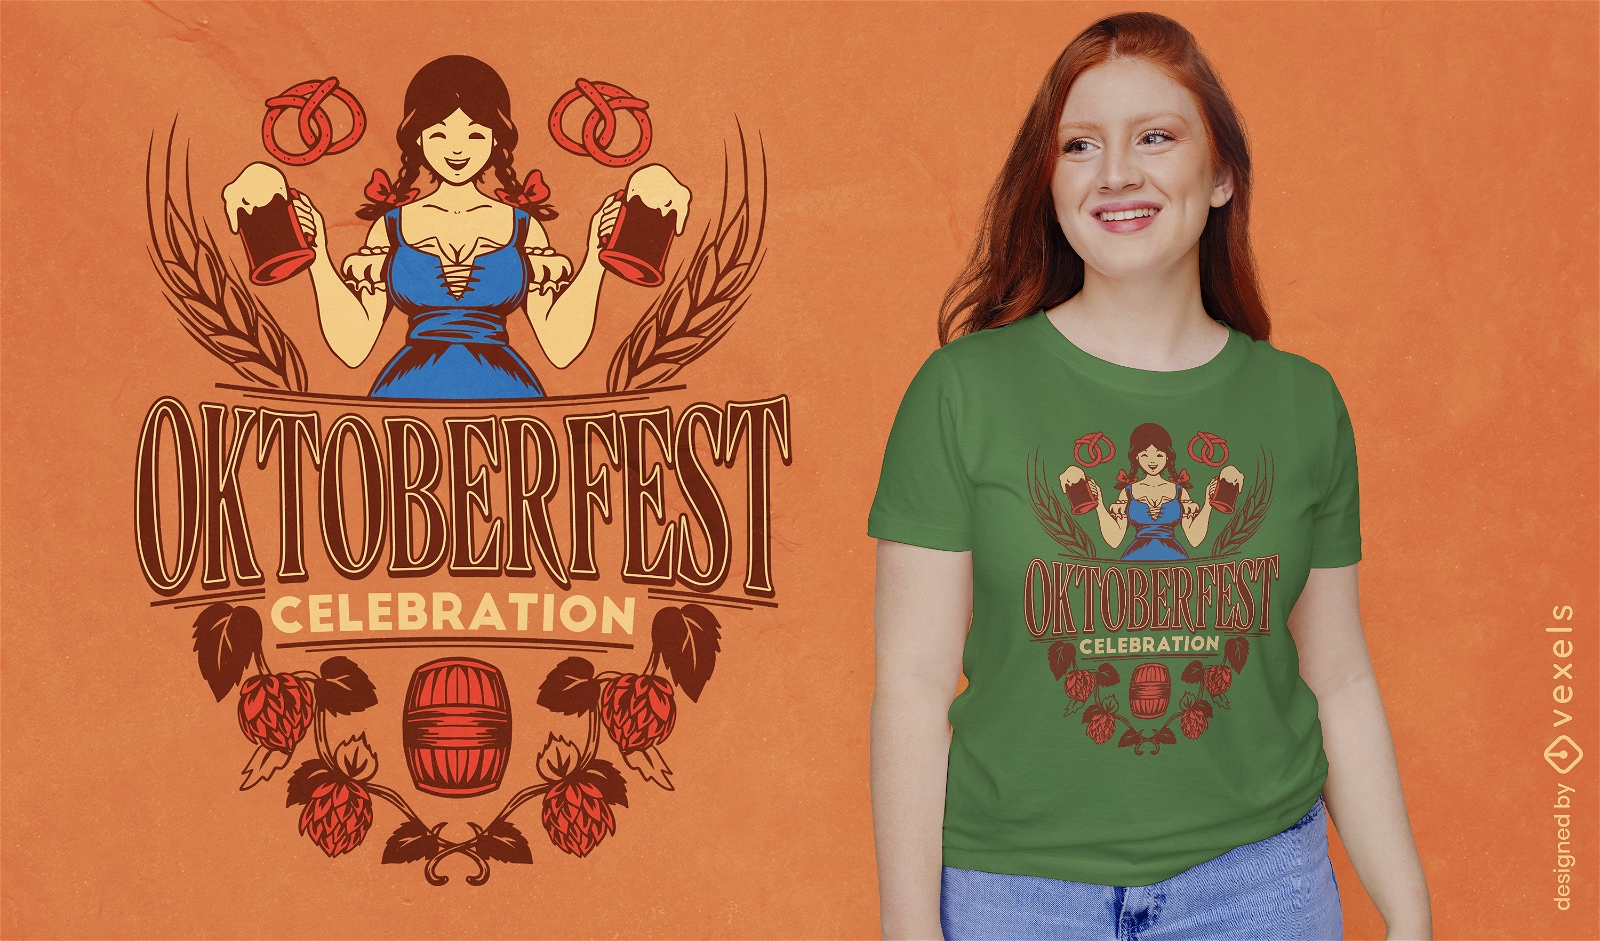 Oktoberfest waitress t-shirt design